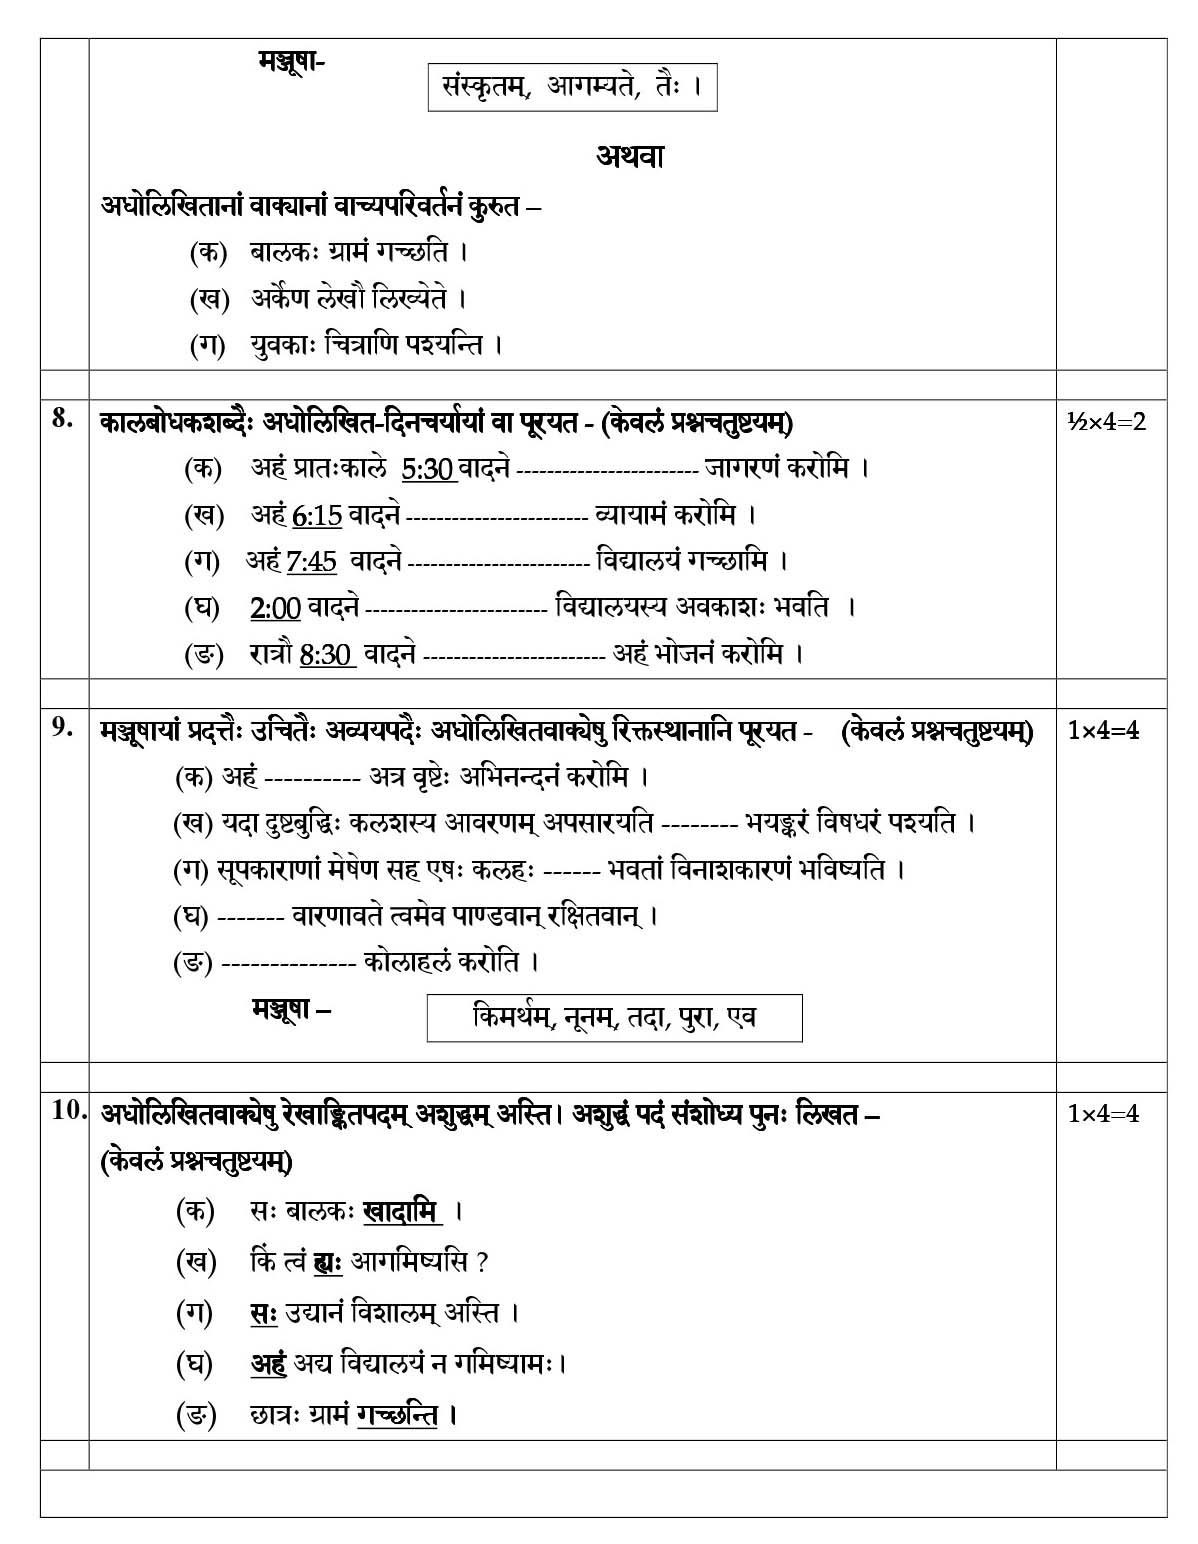 Sanskrit CBSE Class X Sample Question Paper 2018-19 - Image 6